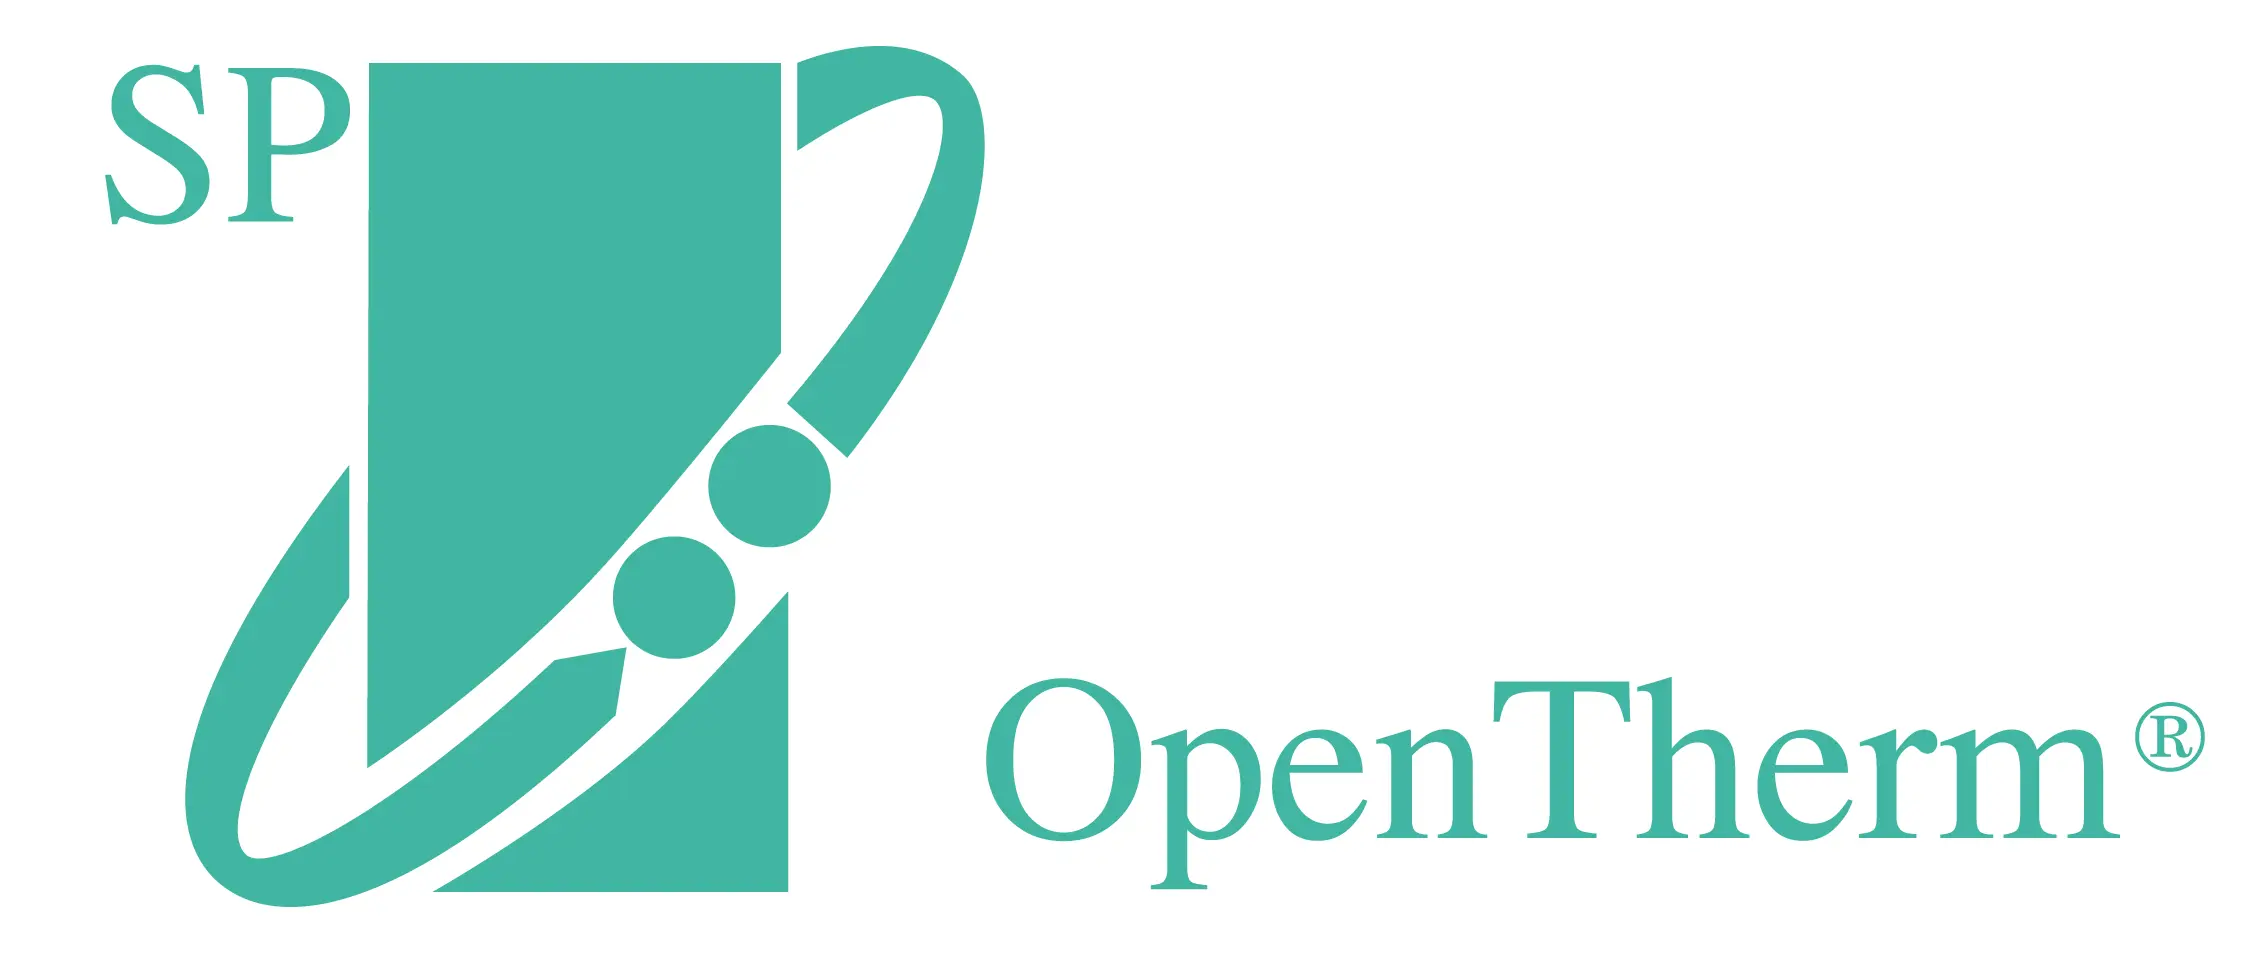 Logo del estándar del protocolo OpenTherm